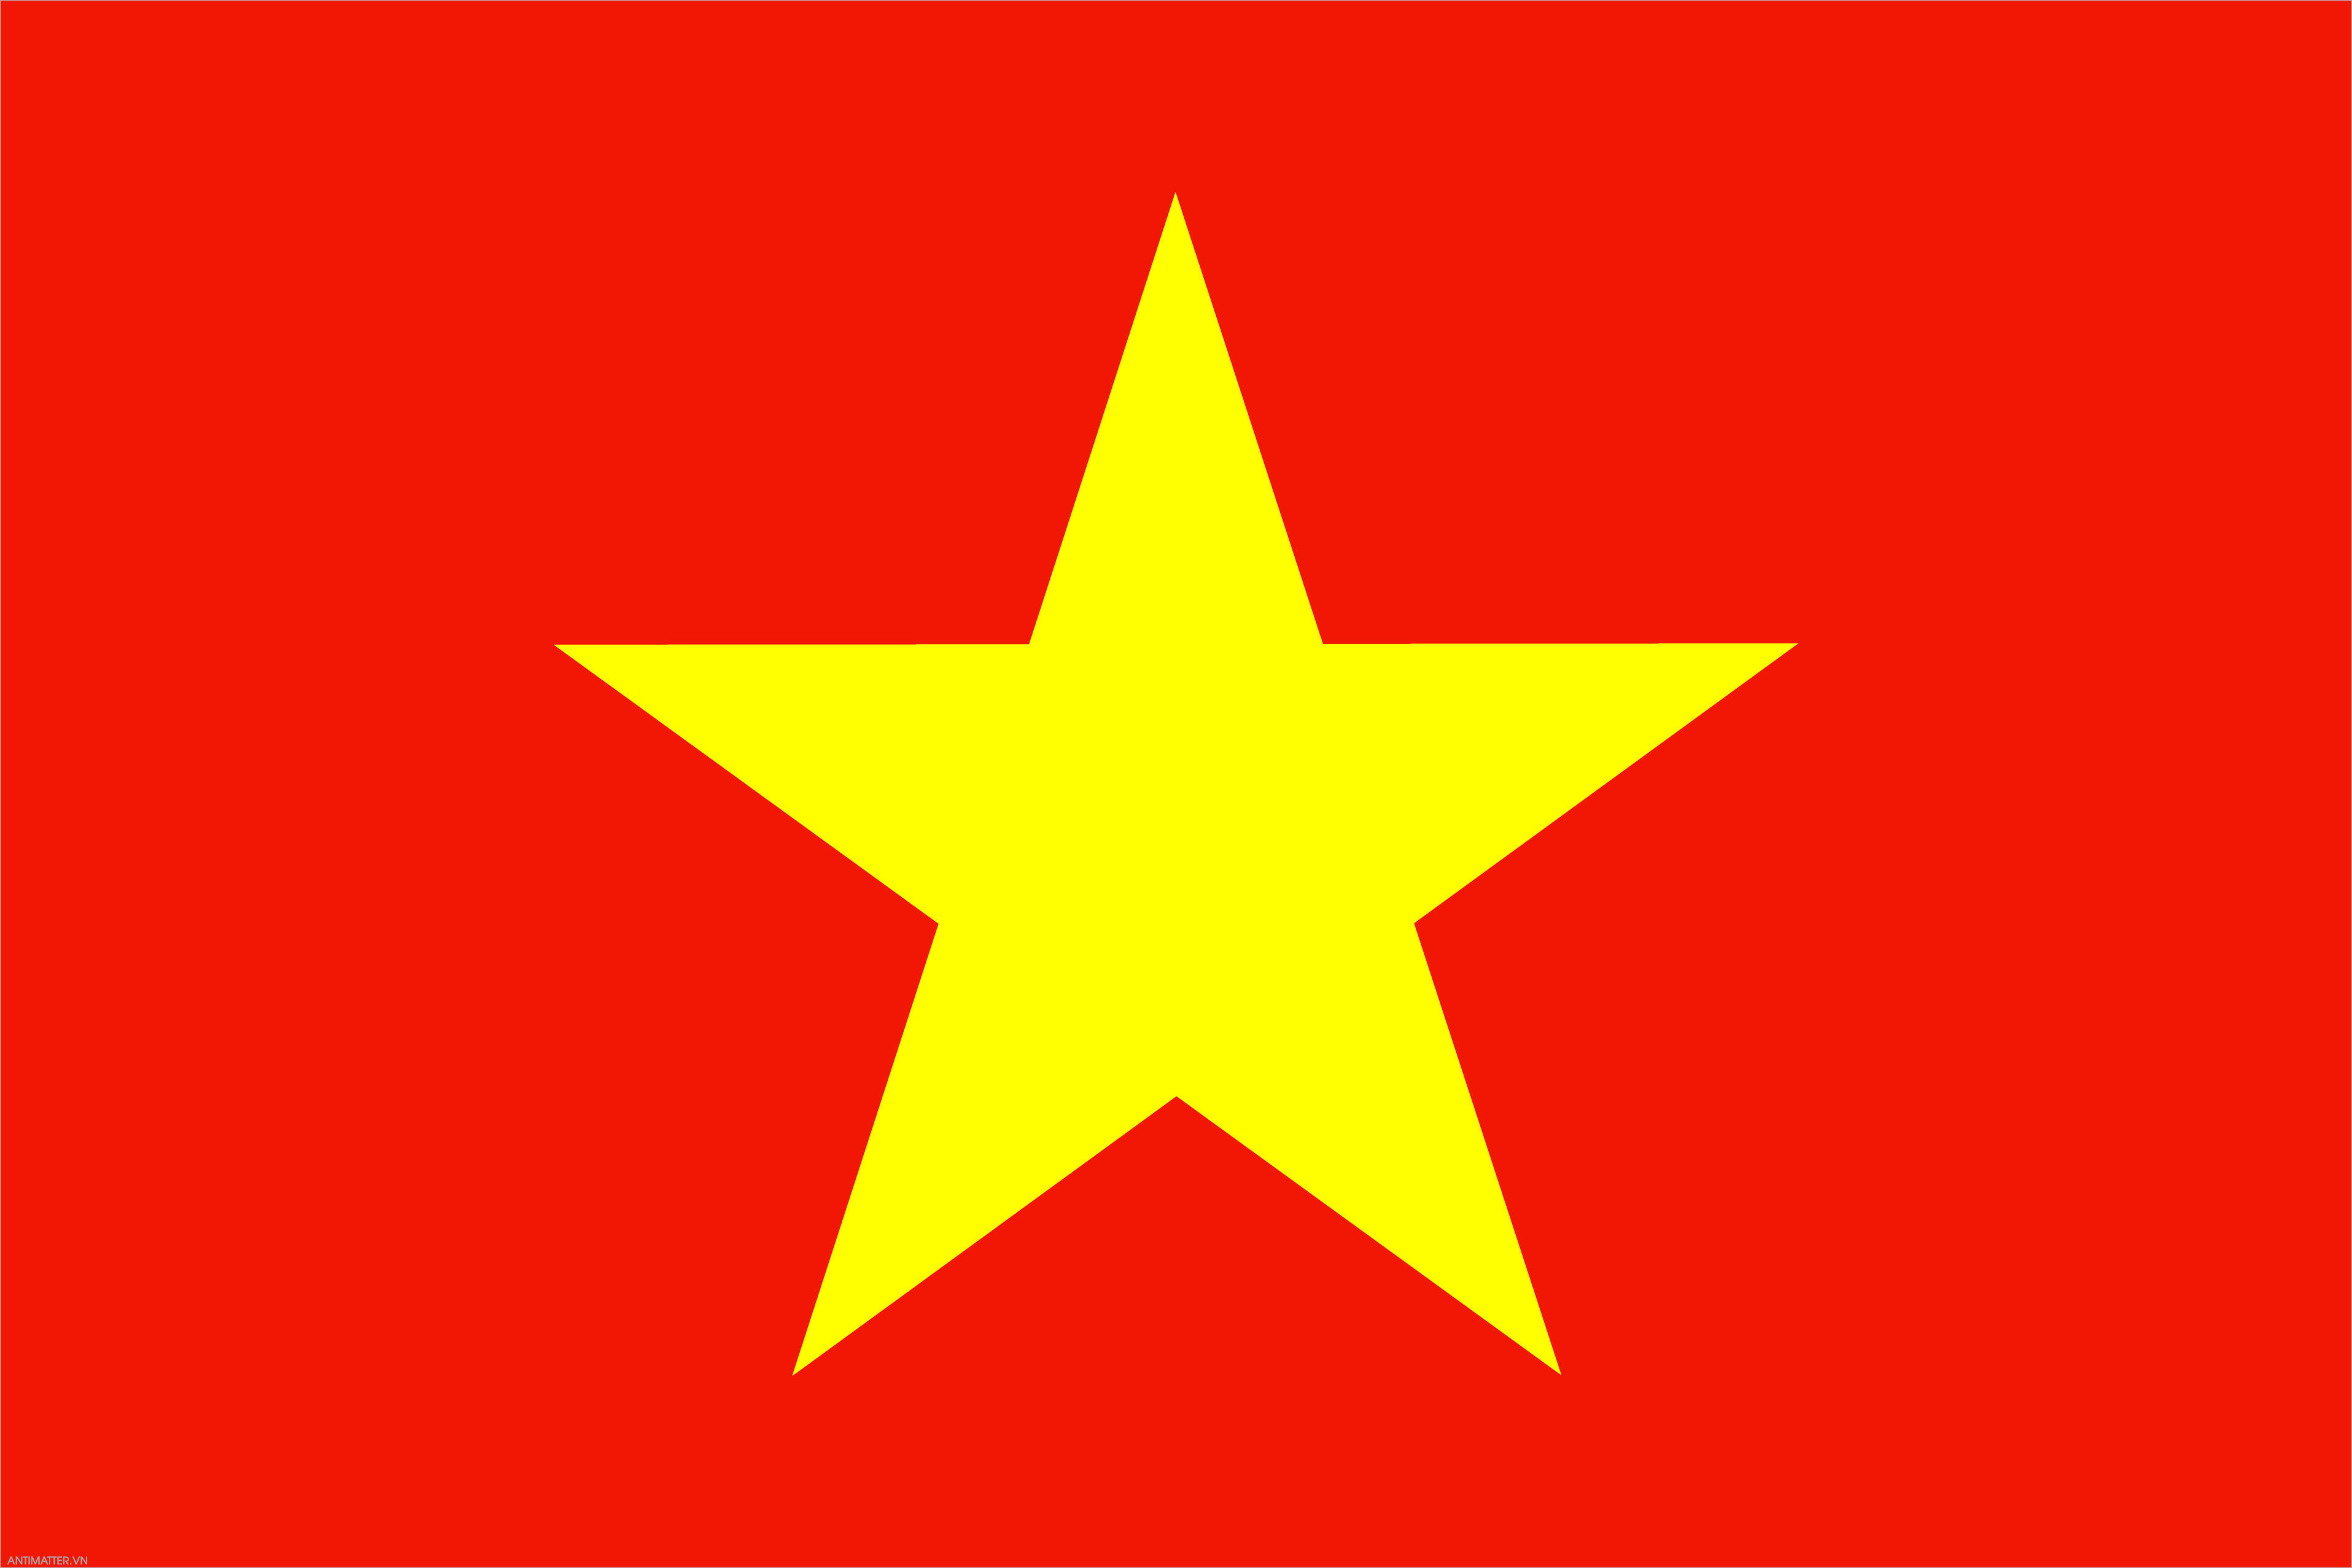 Hình nền cờ Việt Nam: Cờ Việt Nam là một trong những biểu tượng đặc trưng của đất nước và con người Việt Nam. Với hình ảnh con ngựa chinh phục đỉnh núi, tượng trưng cho sự bền bỉ, tinh thần kiên định và chiến thắng. Hình nền cờ Việt Nam sẽ cho bạn những trải nghiệm tuyệt vời khi sử dụng máy tính hoặc thiết bị di động, tạo nên không gian làm việc đầy tinh thần yêu nước.